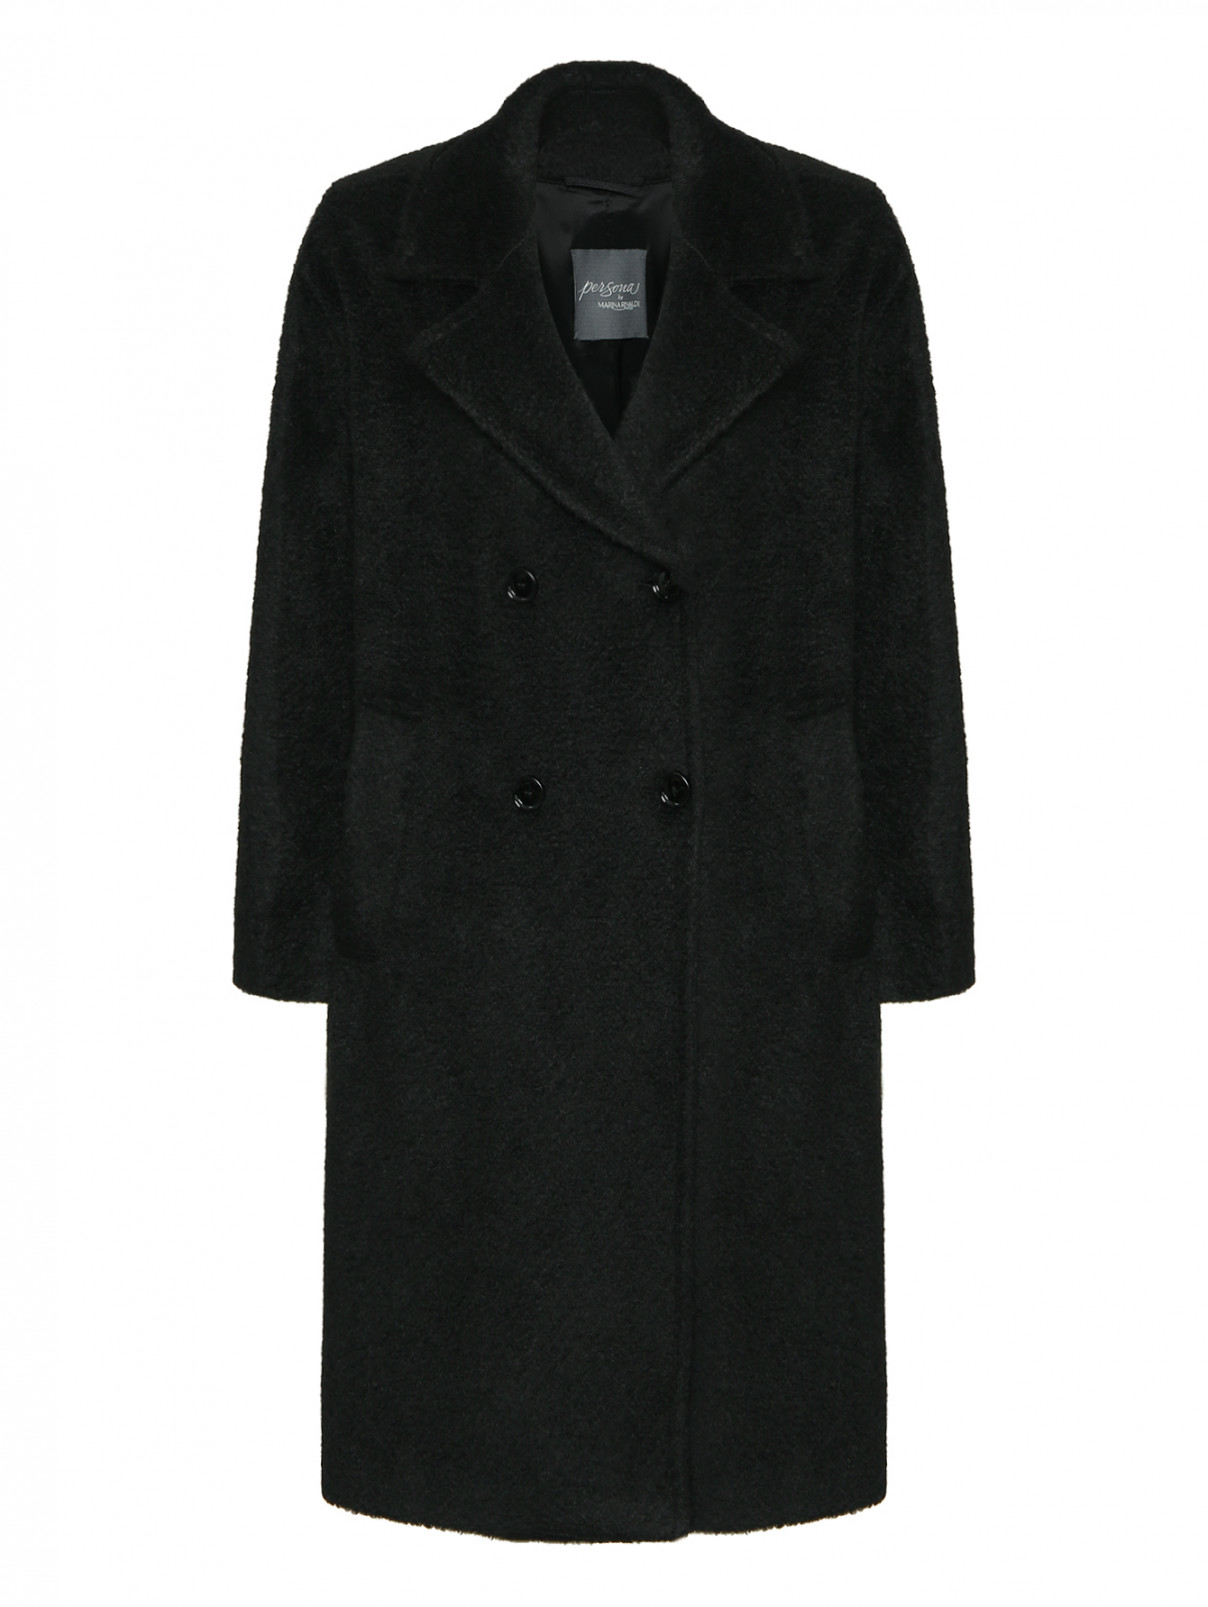 Двубортное пальто с карманами Persona by Marina Rinaldi  –  Общий вид  – Цвет:  Черный